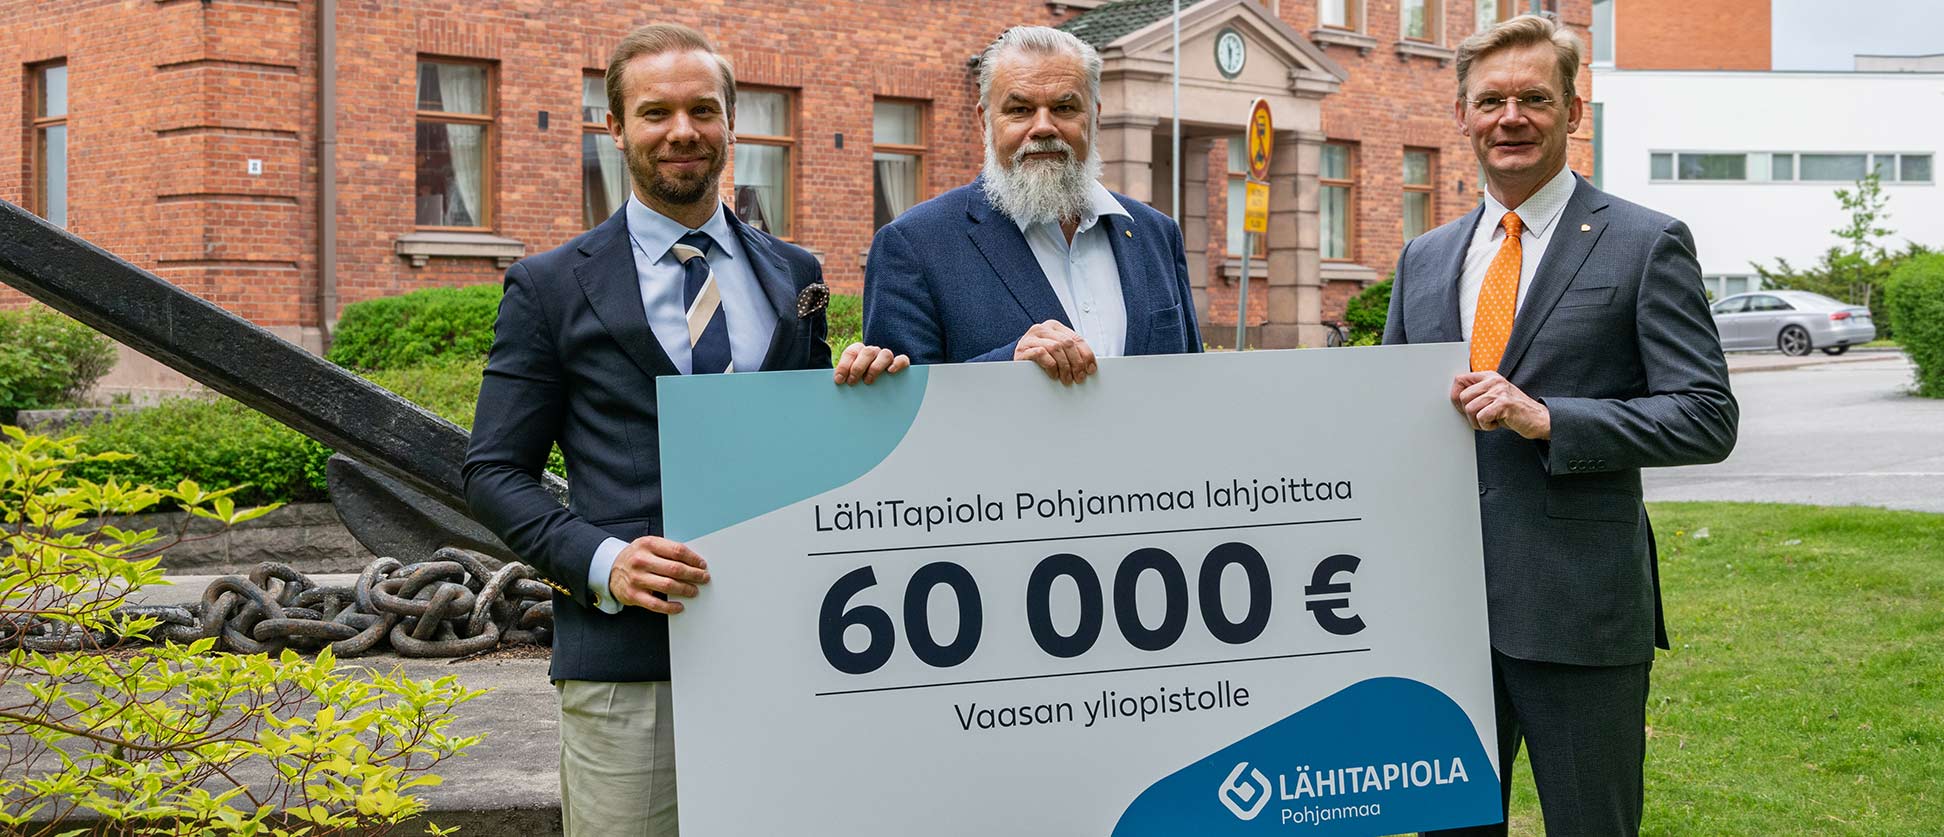 LokalTapiola Österbotten donerar 60 000 euro till Vasa universitet |  LokalTapiola